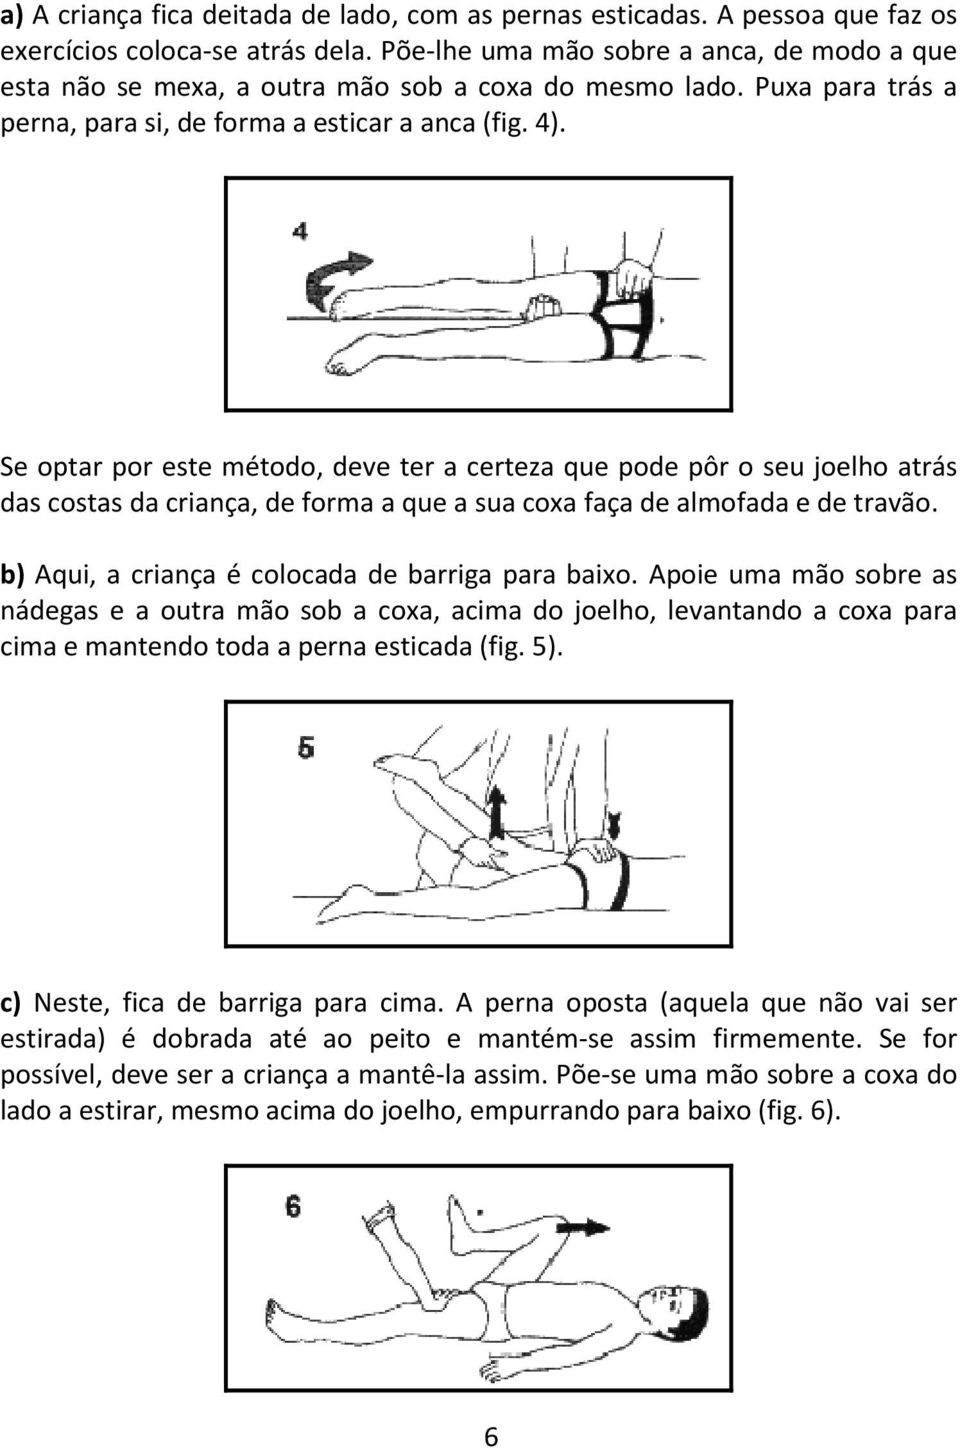 Se optar por este método, deve ter a certeza que pode pôr o seu joelho atrás das costas da criança, de forma a que a sua coxa faça de almofada e de travão.